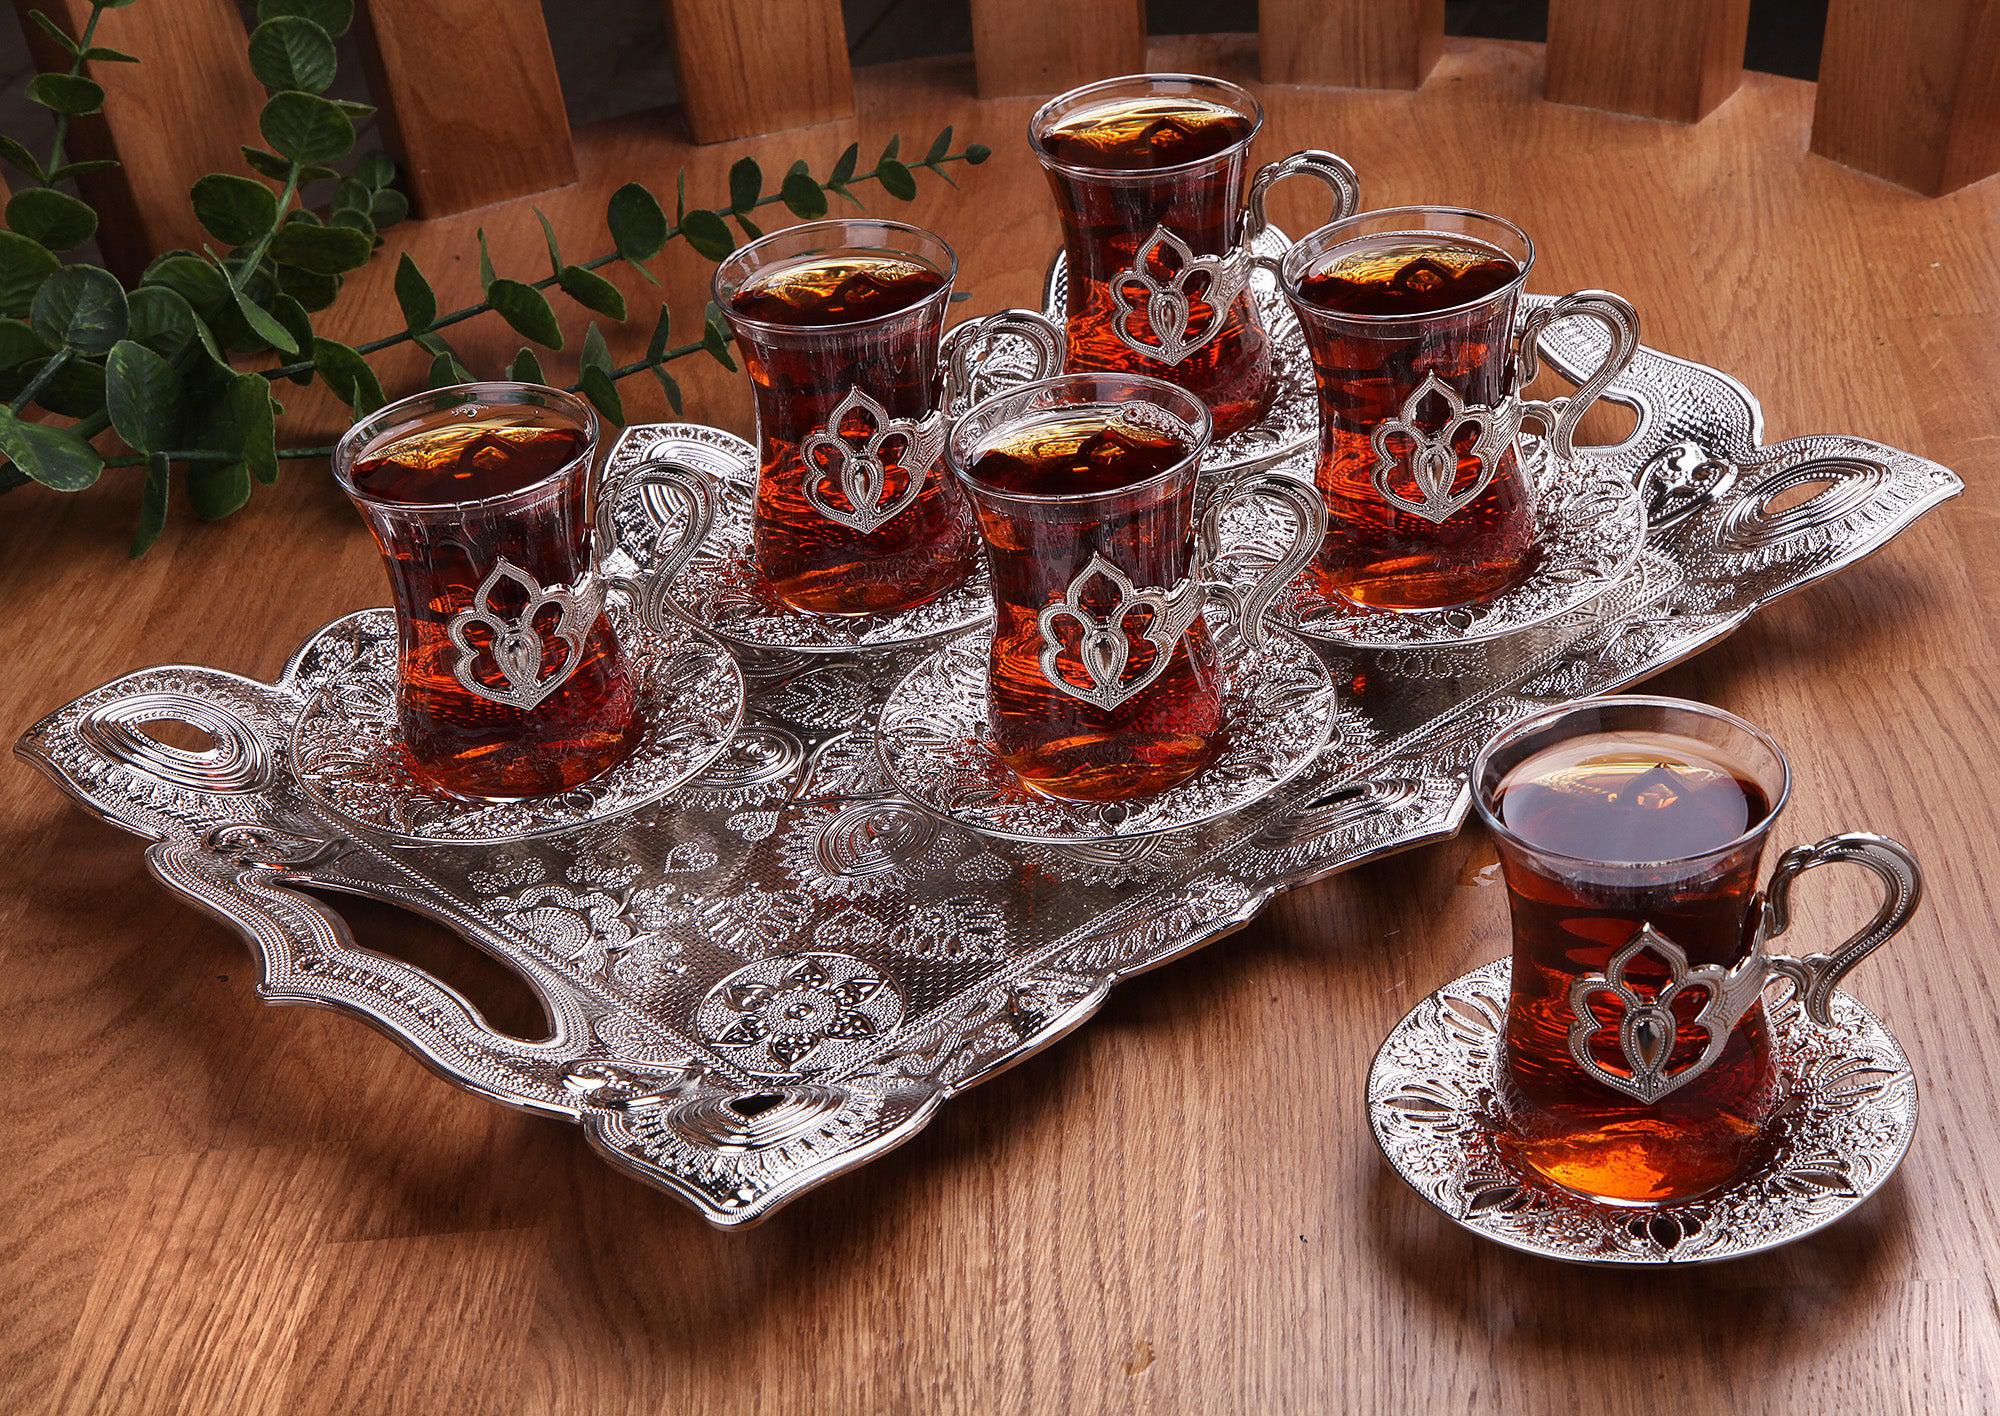 http://www.eliteturkishbazaar.com/cdn/shop/products/Blend-Tray-With-Tea-Set-eliteturkishbazaar-4.jpg?v=1681213407